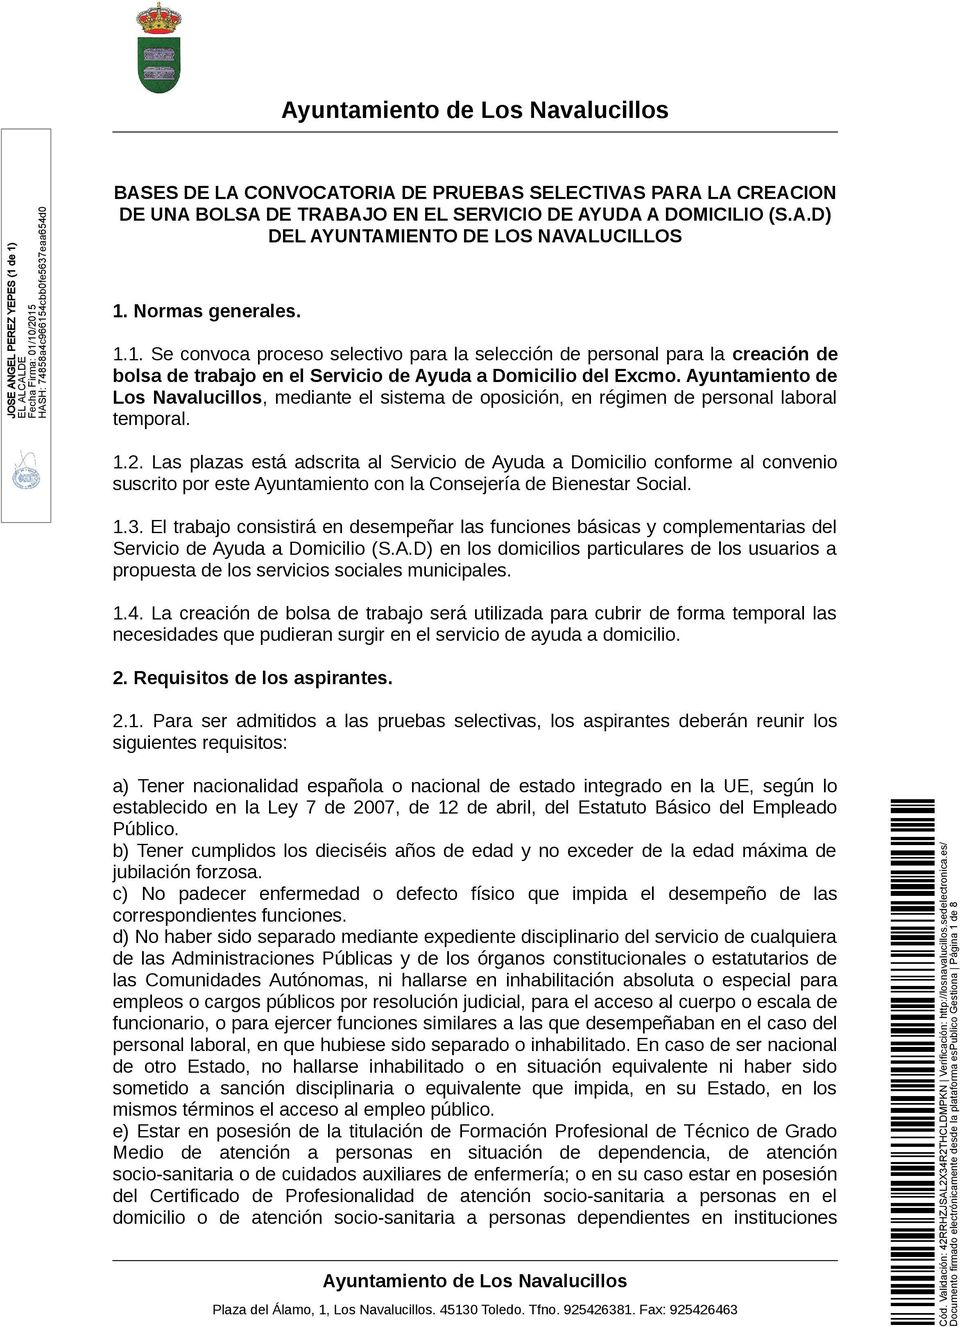 Ayuntamiento de Los Navalucillos, mediante el sistema de oposición, en régimen de personal laboral temporal. 1.2.